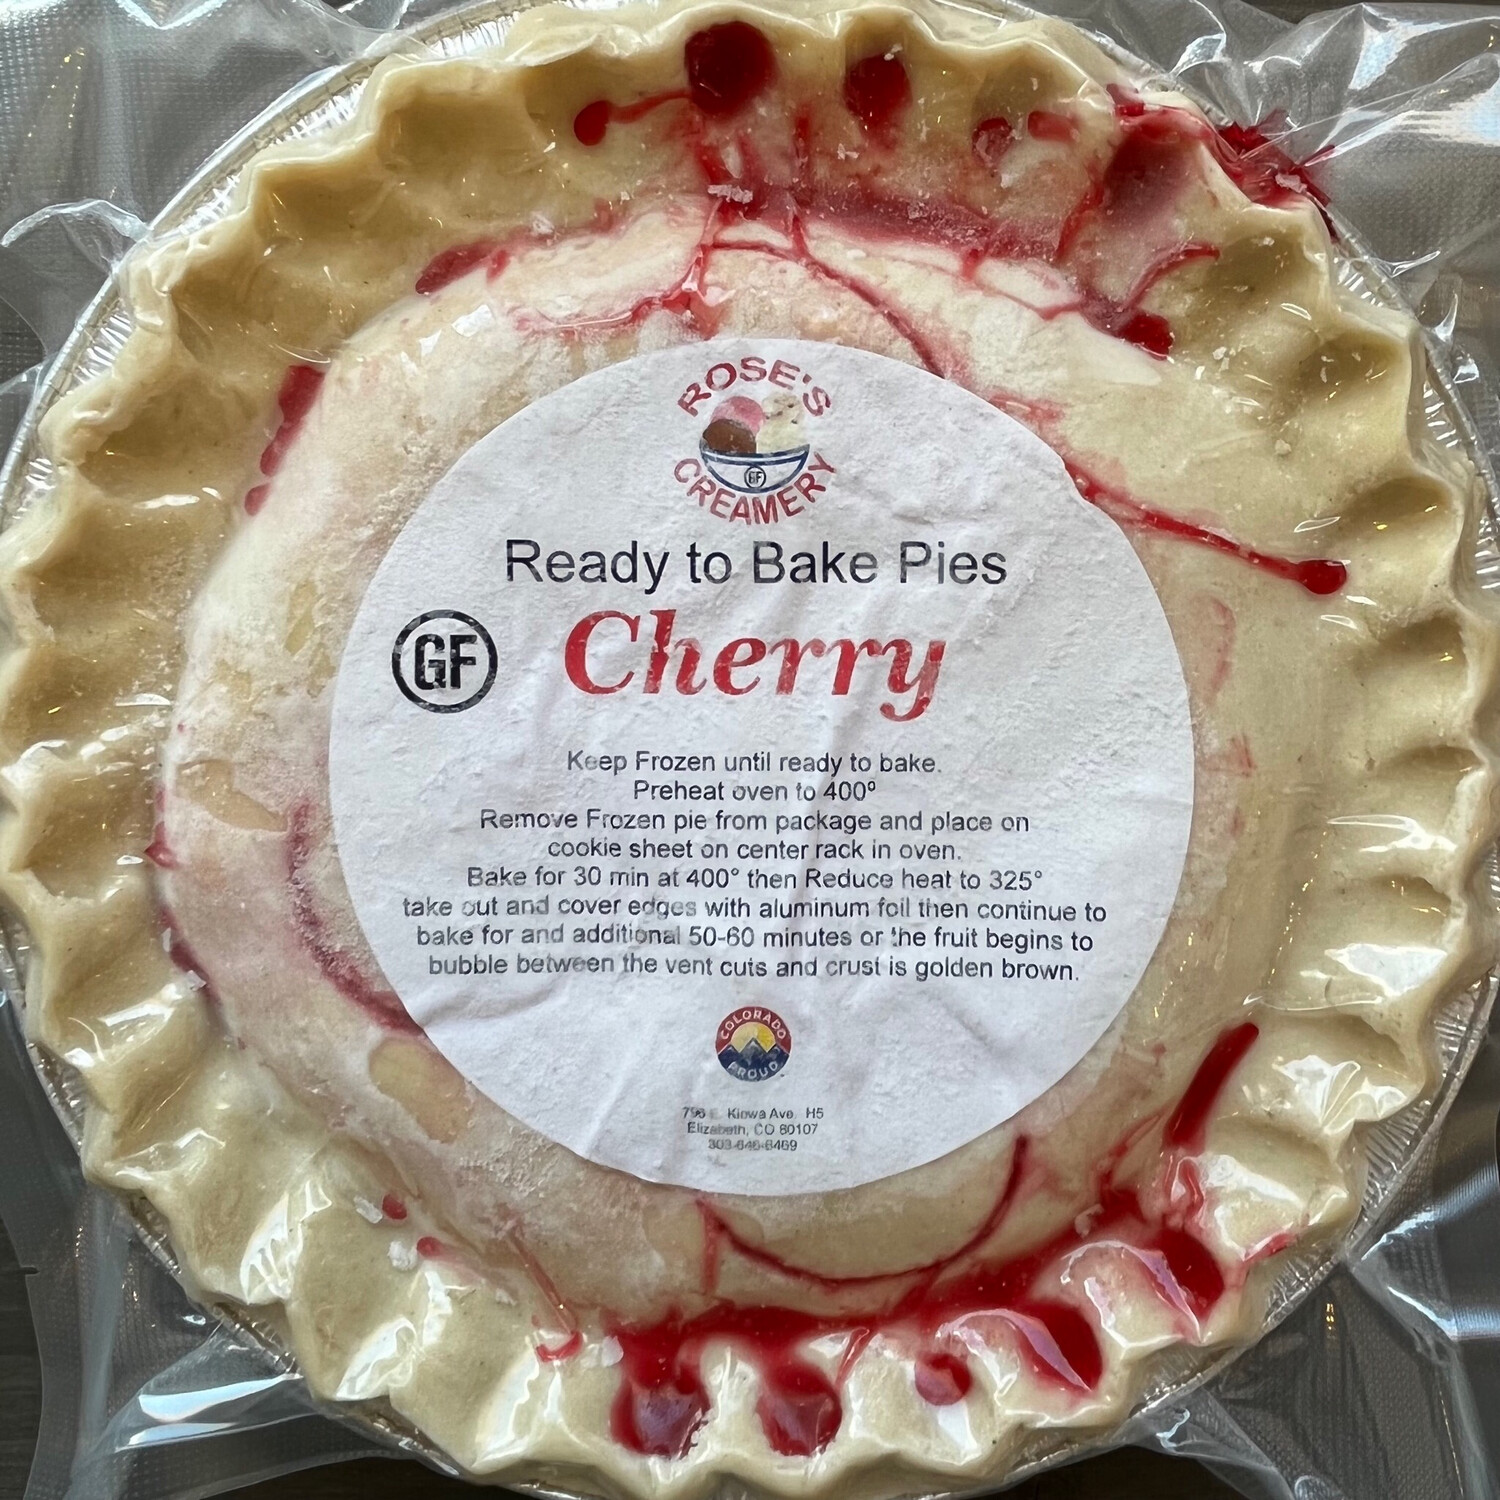 Roses GF Cherry Pie